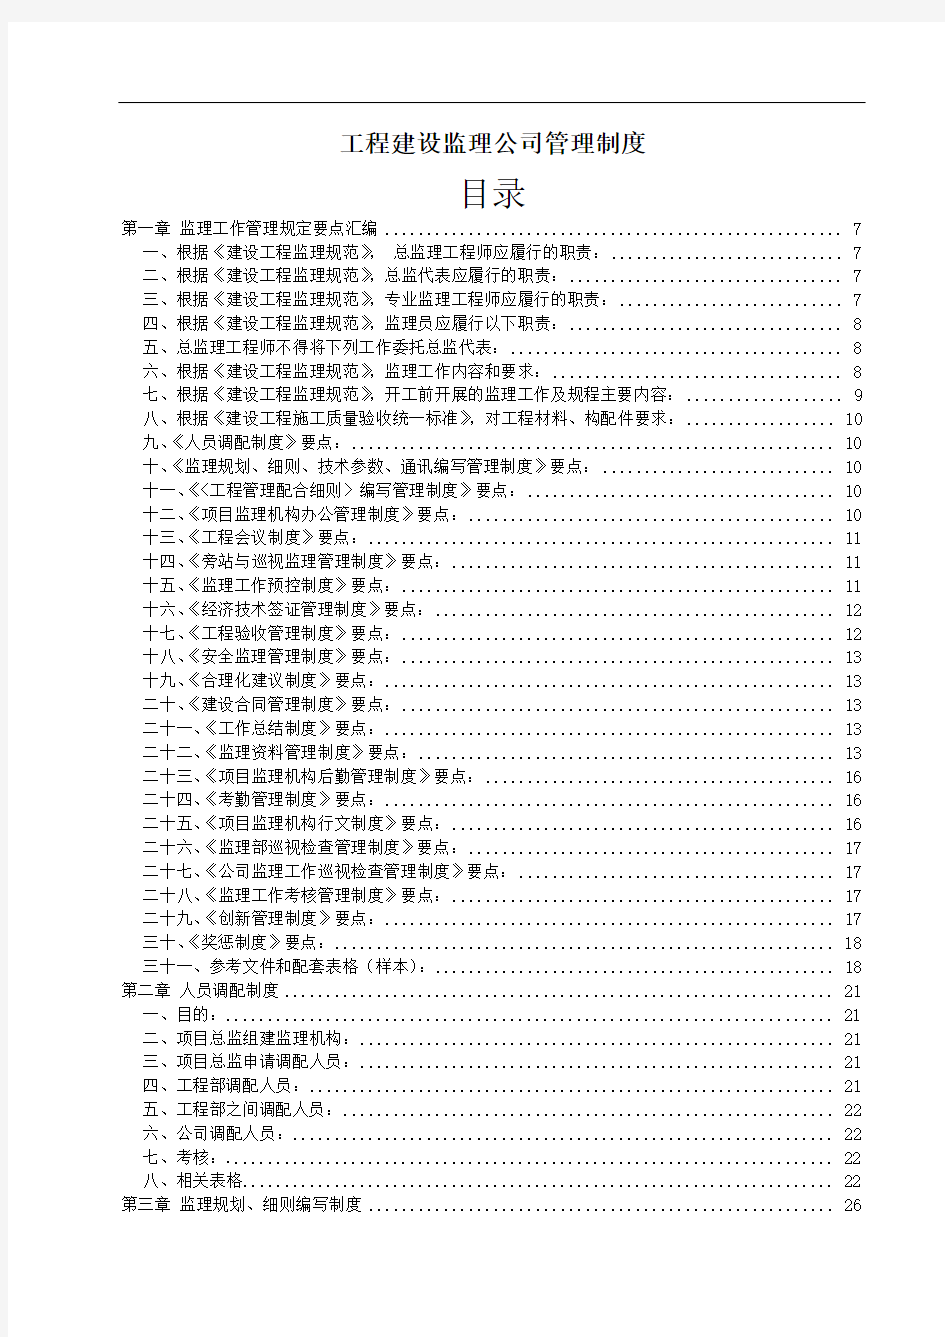 工程建设监理公司管理制度(全套)127页